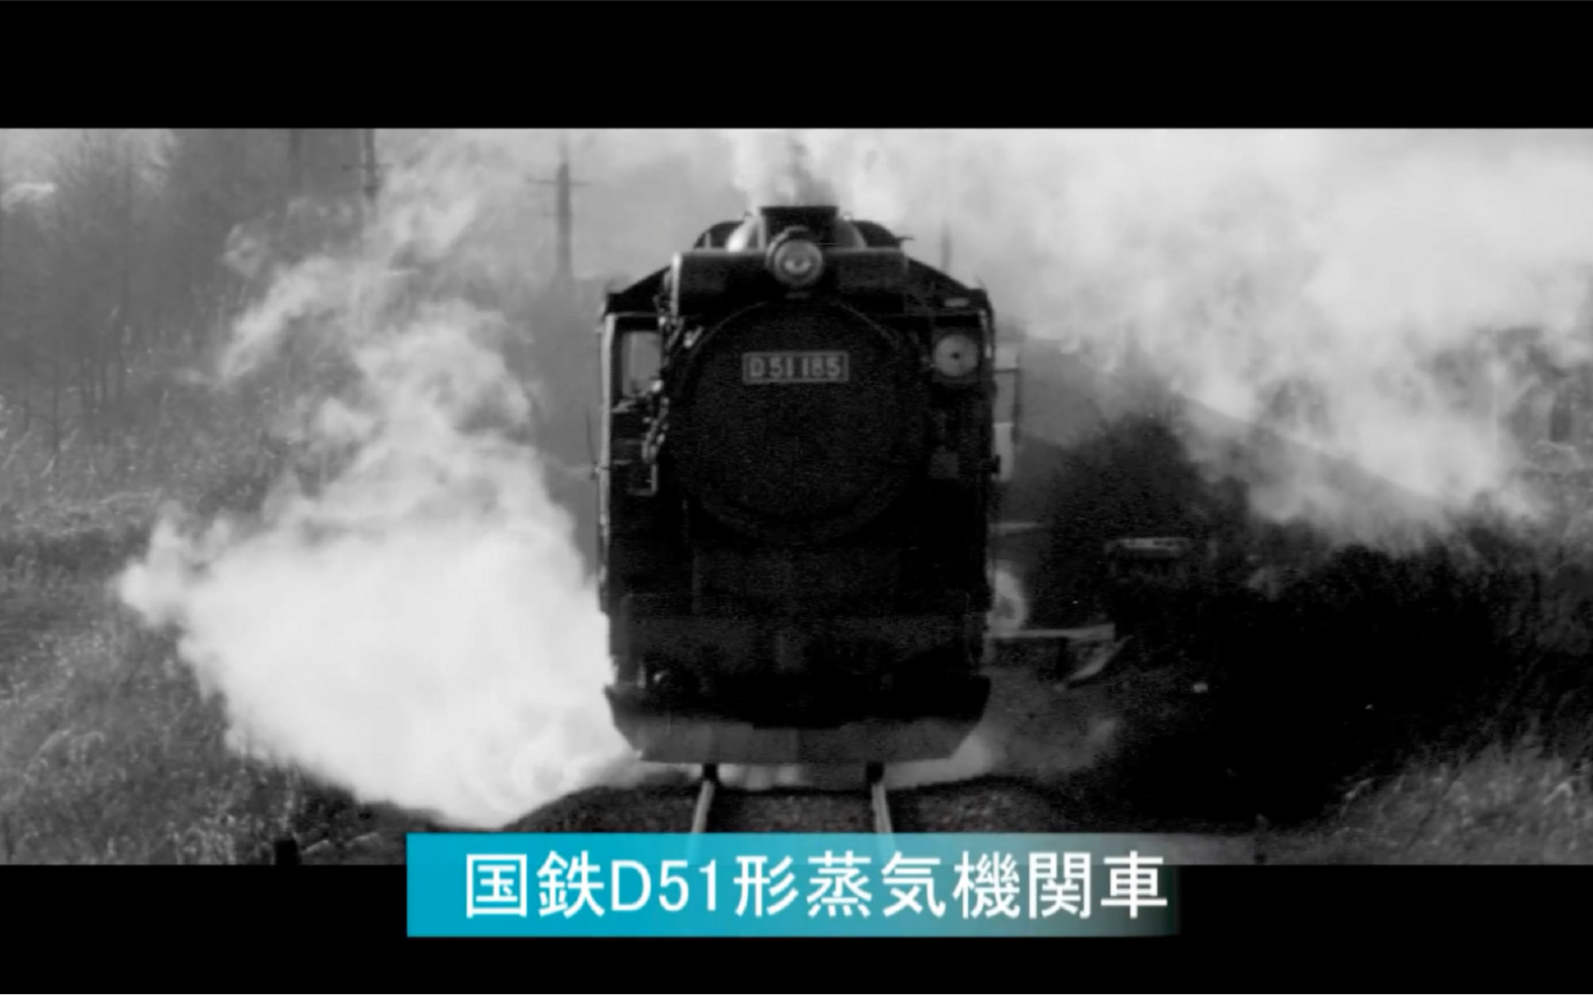 1962日本記錄映画 国鉄d51形蒸気機関車雪原を行く 哔哩哔哩 つロ干杯 Bilibili